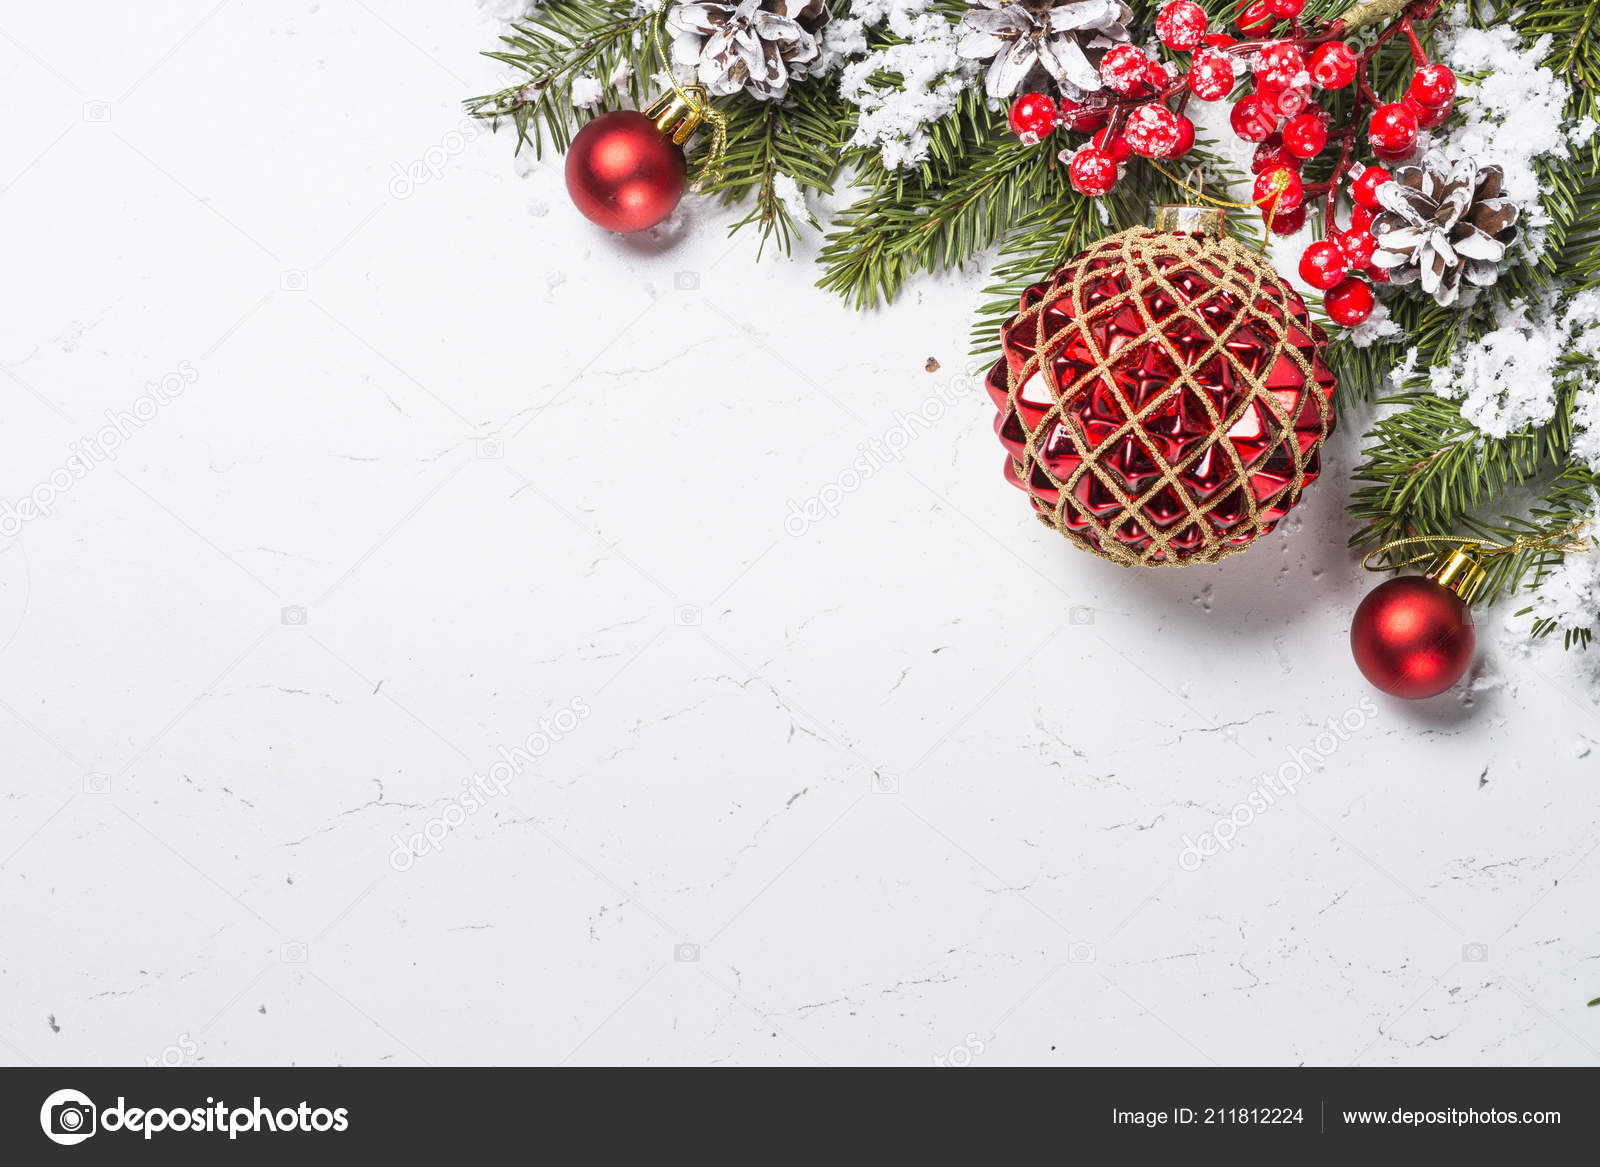 Tìm kiếm phông nền Giáng sinh đỏ để bắt đầu chuẩn bị cho mùa lễ hội sắp tới? Xem ngay hình ảnh liên quan để tìm kiếm những ý tưởng trang trí bắt mắt để đón Giáng sinh đầy màu sắc.